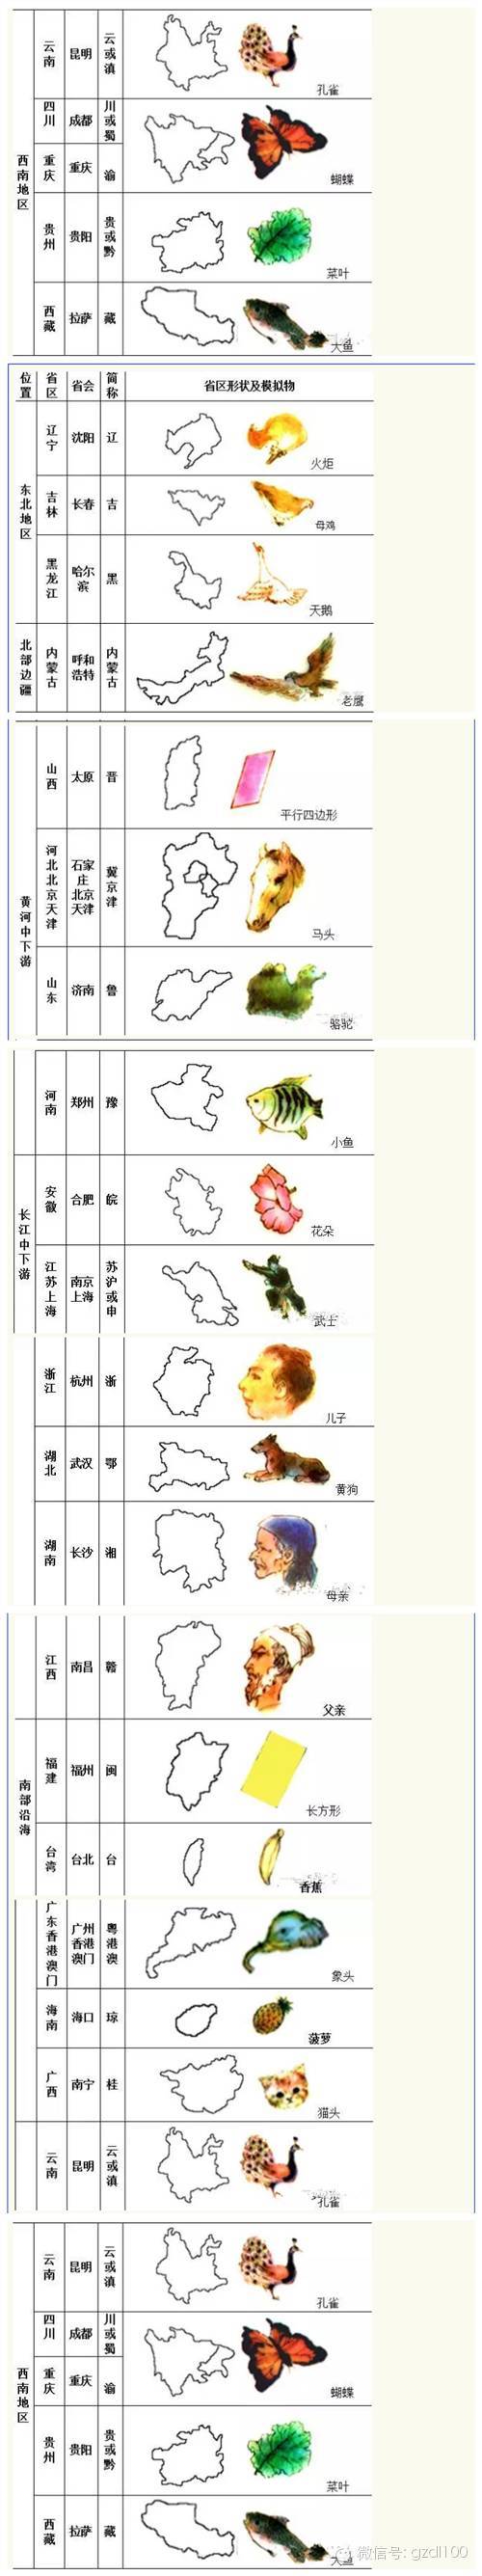 中国省份轮廓形象记忆图片